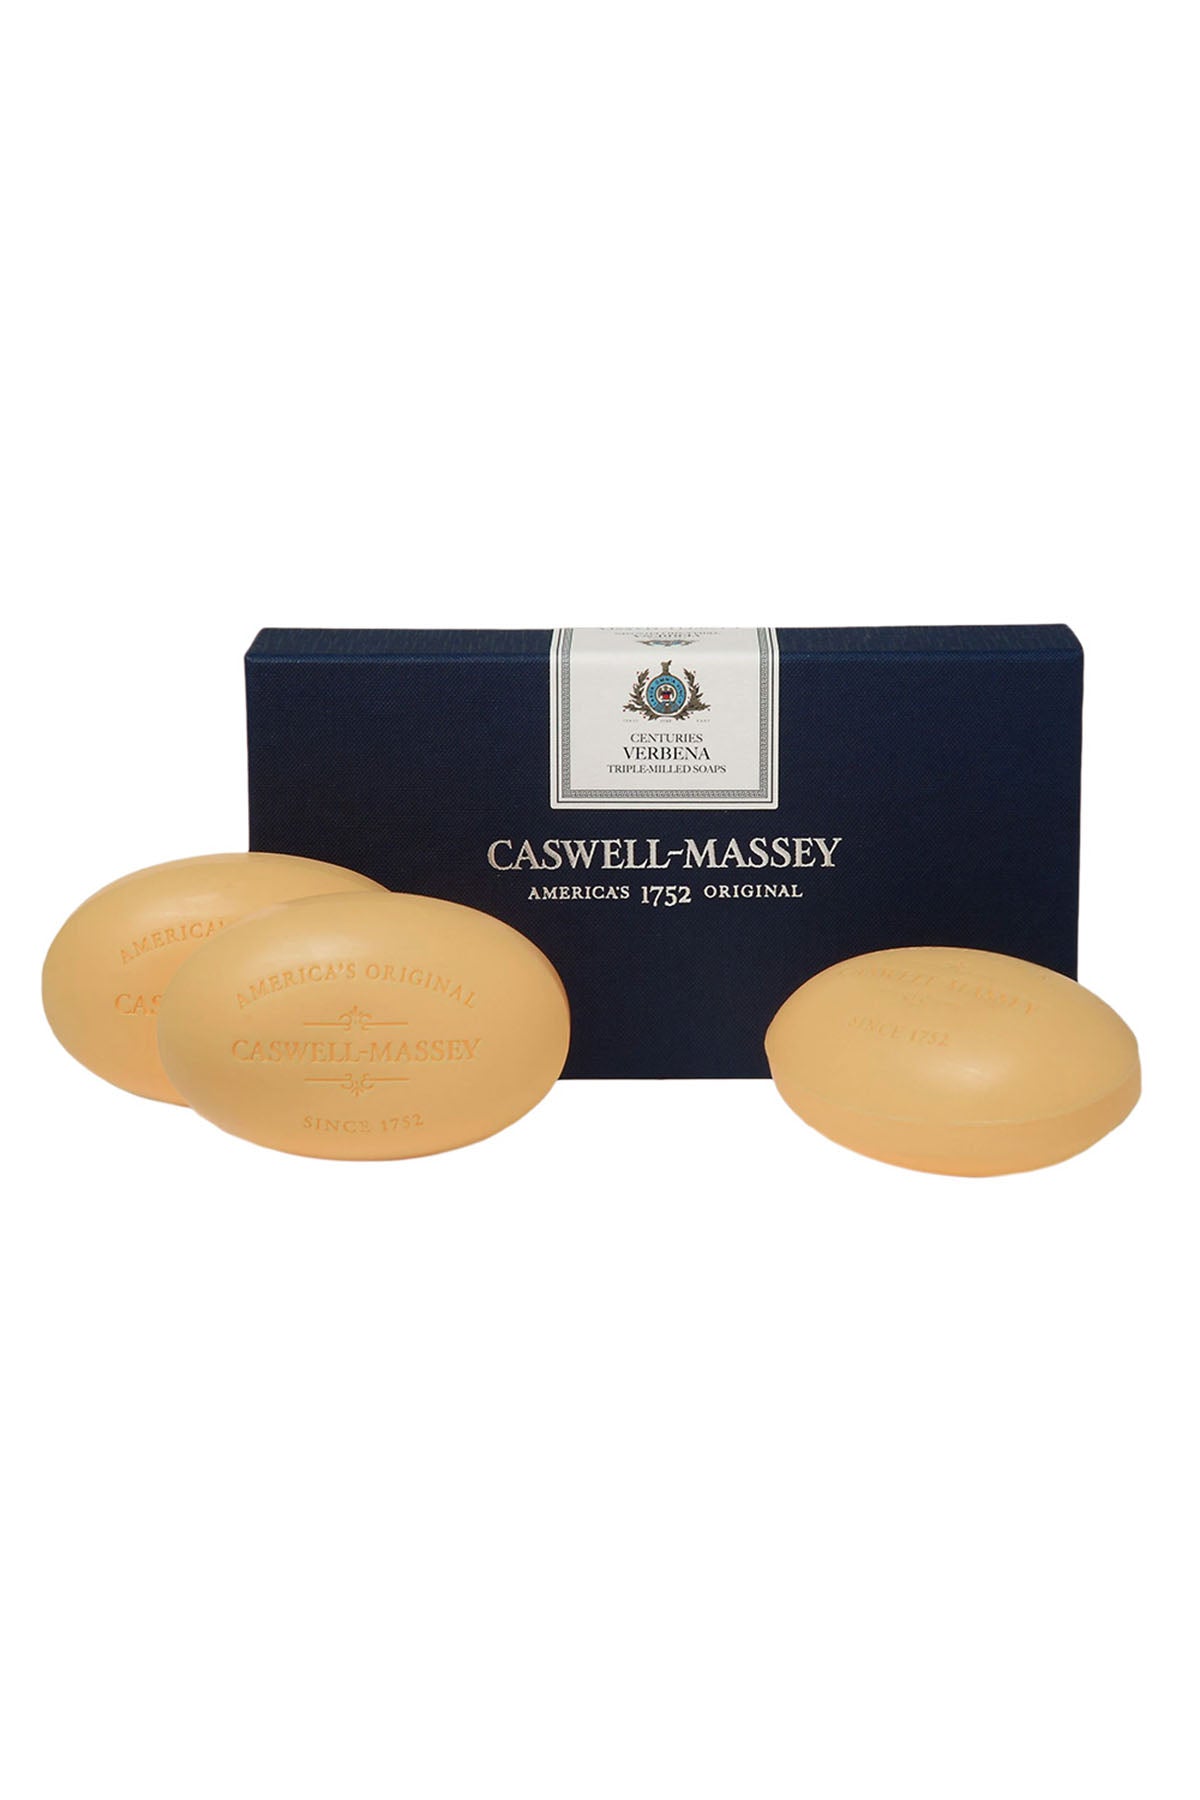 Caswell-Massey Centuries Verbena 3 Bar Soap Set